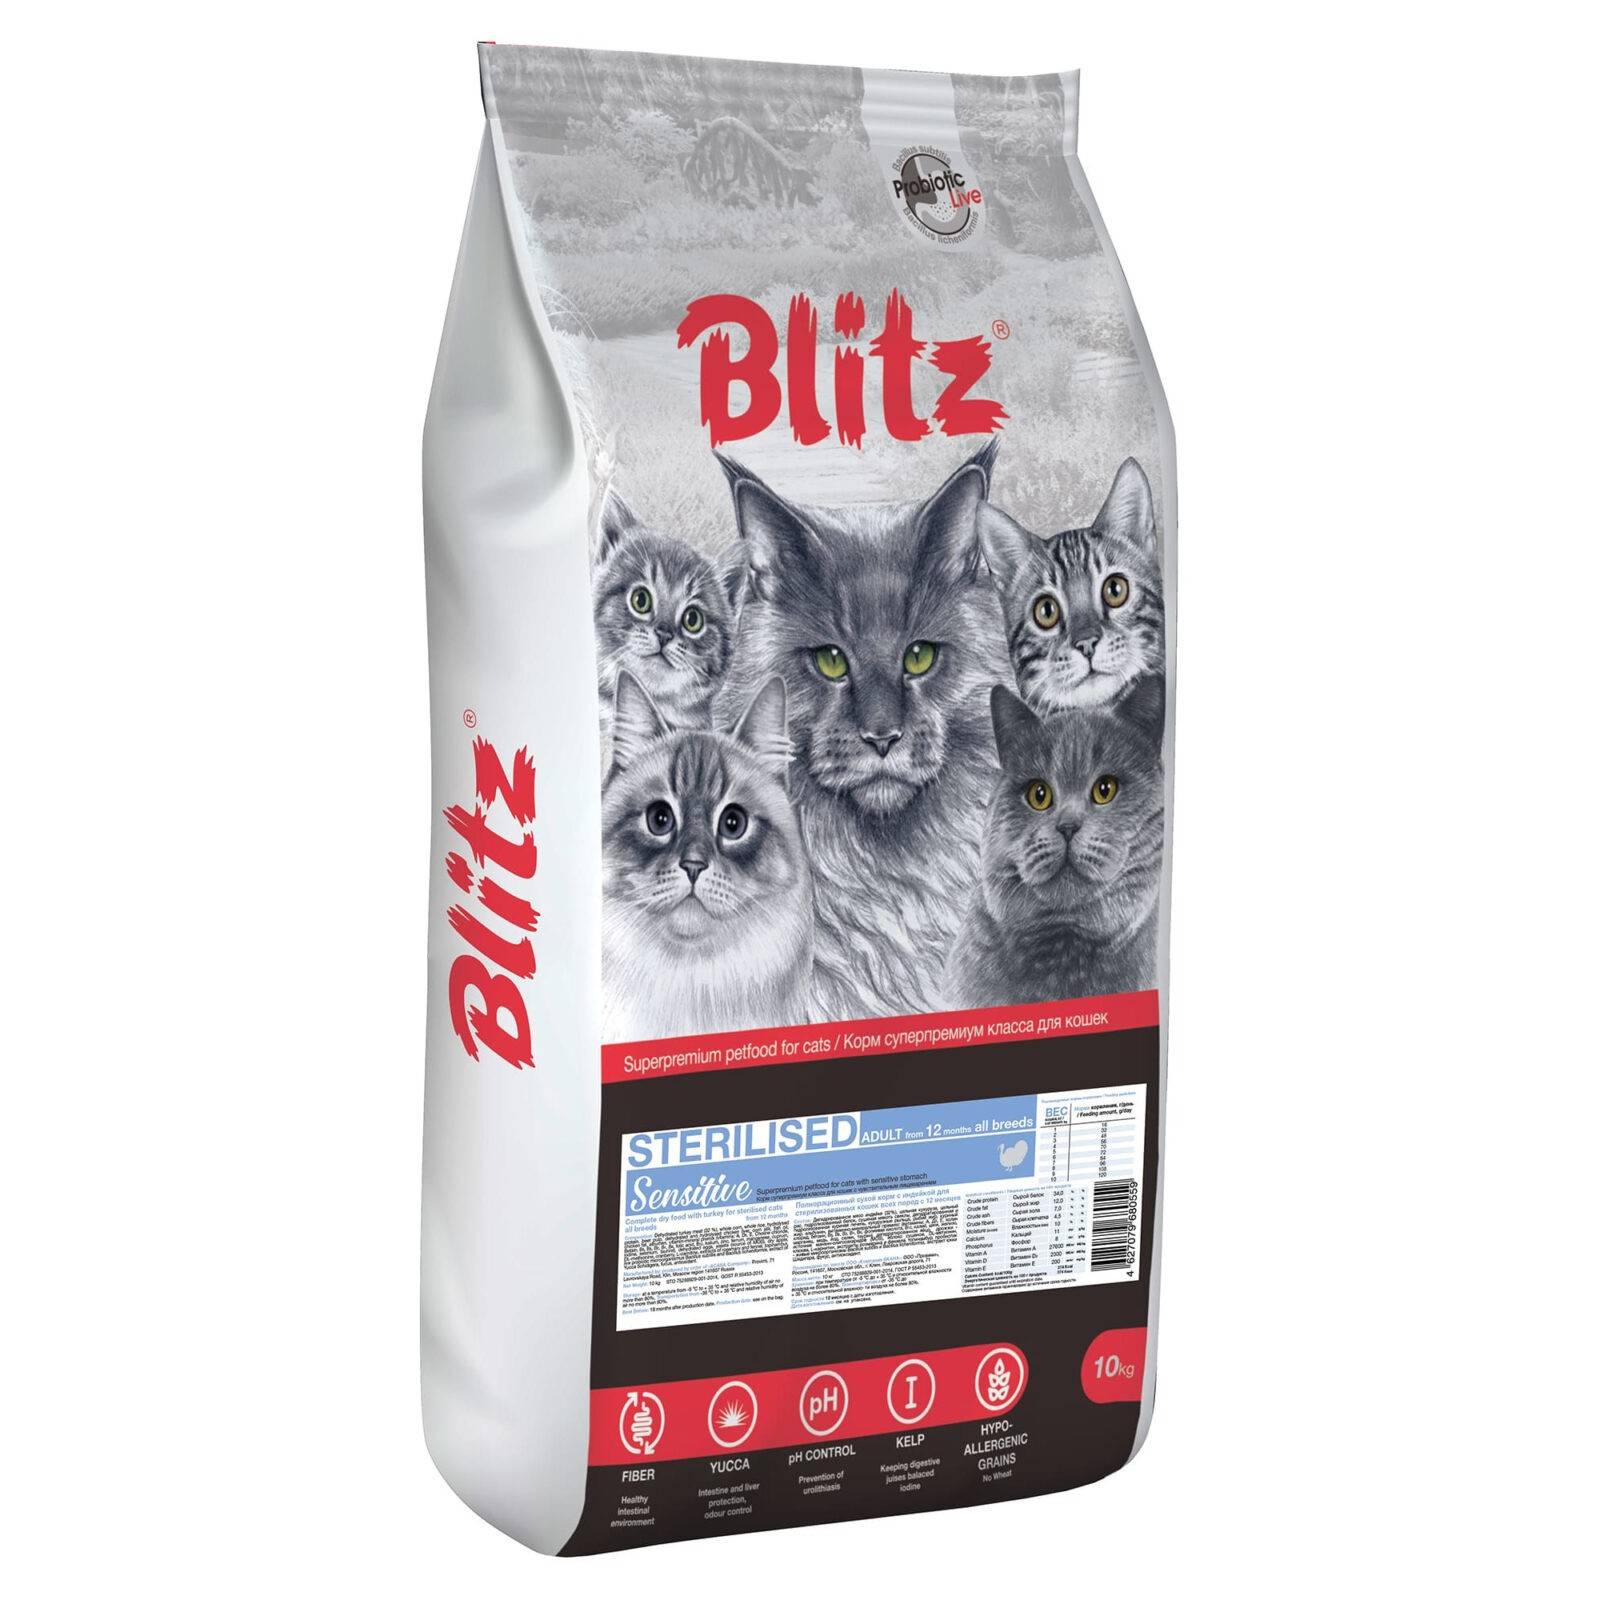 Blitz (корма для кошек): обзор, ассортимент и состав